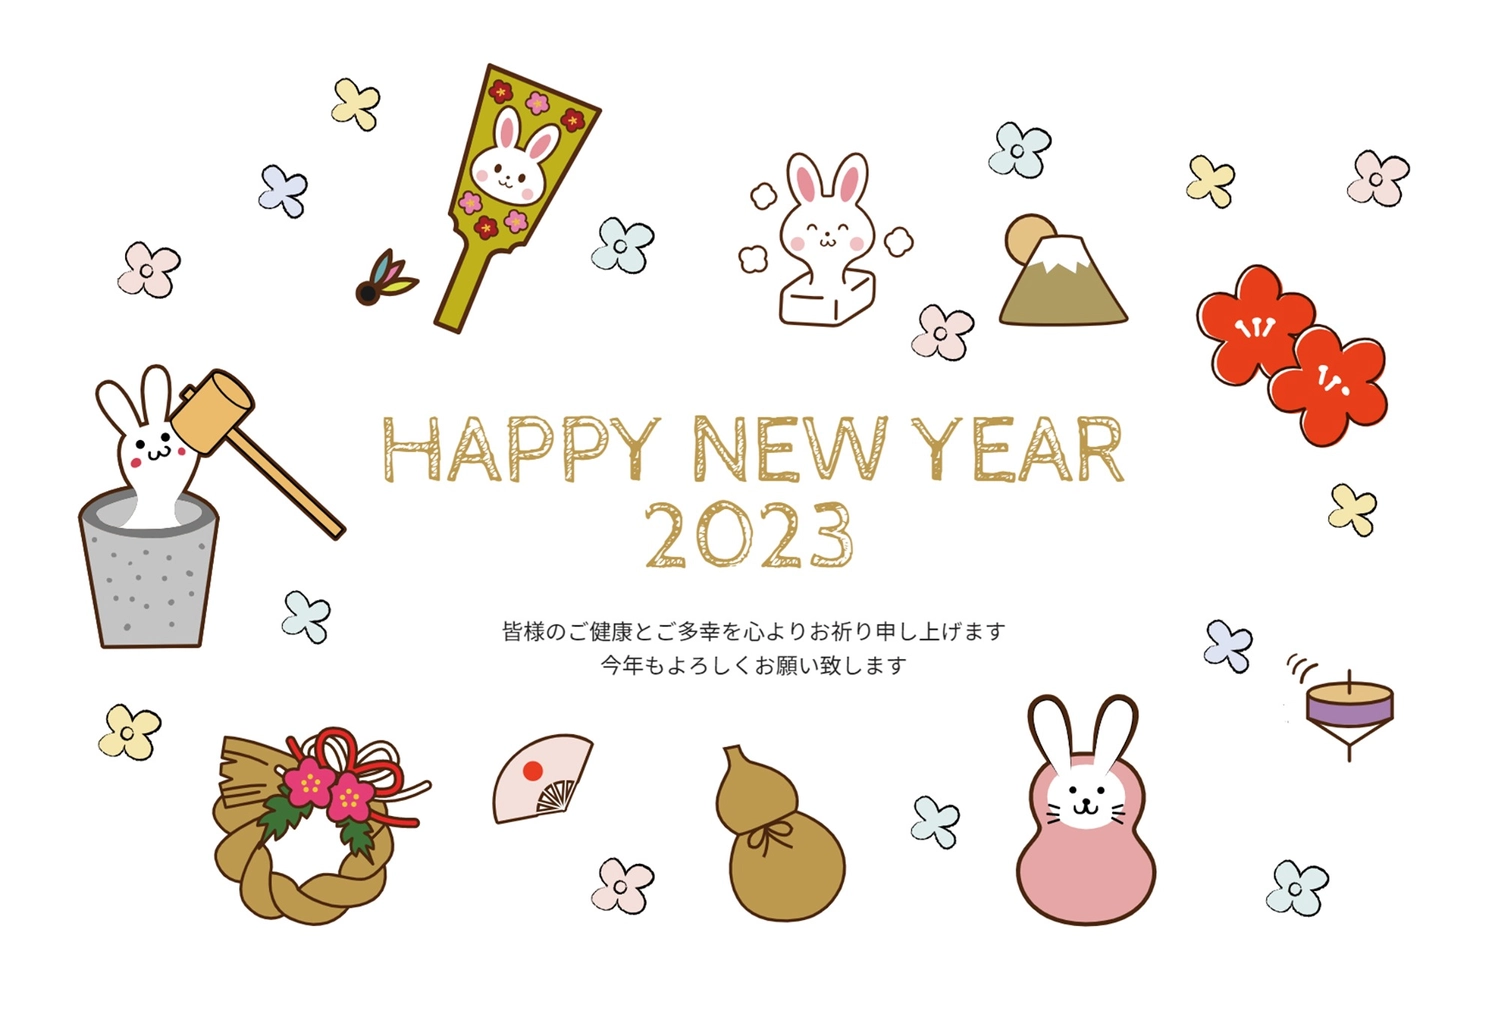 うさぎイラストフレーム年賀状, NEW YEAR, concord, White rabbit, New Year Card template